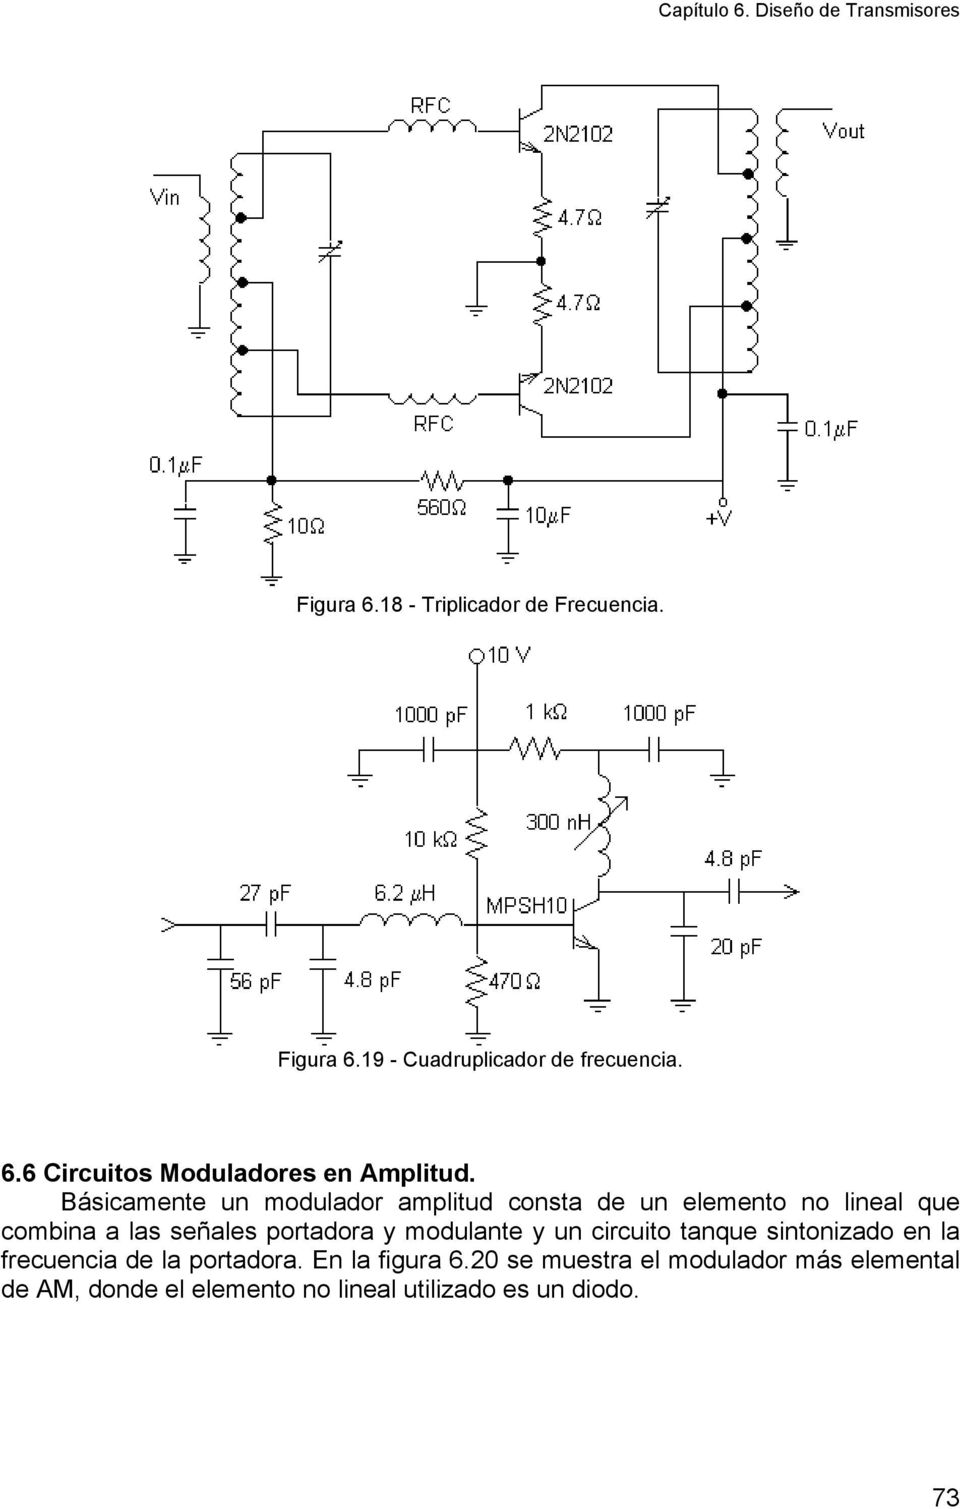 modulante y un circuito tanque sintonizado en la frecuencia de la portadora. En la figura 6.